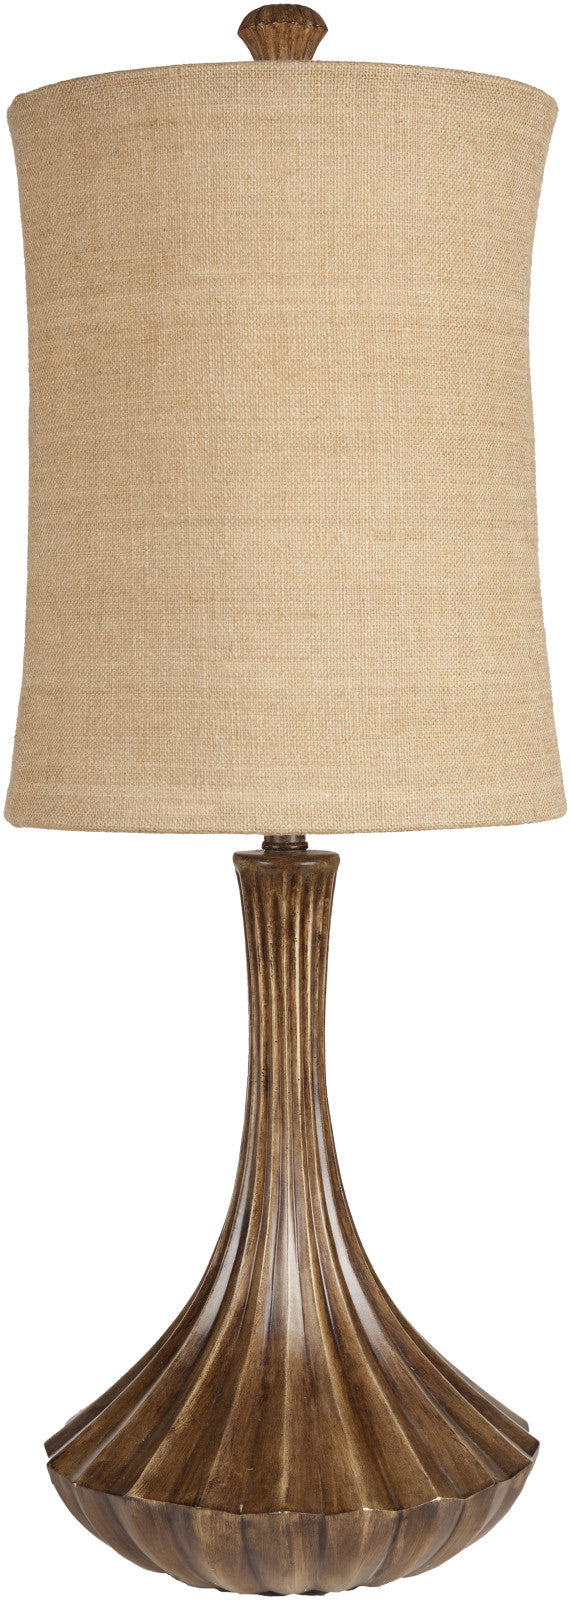 Surya Resin LMP-1027 Natural Lamp Table Lamp